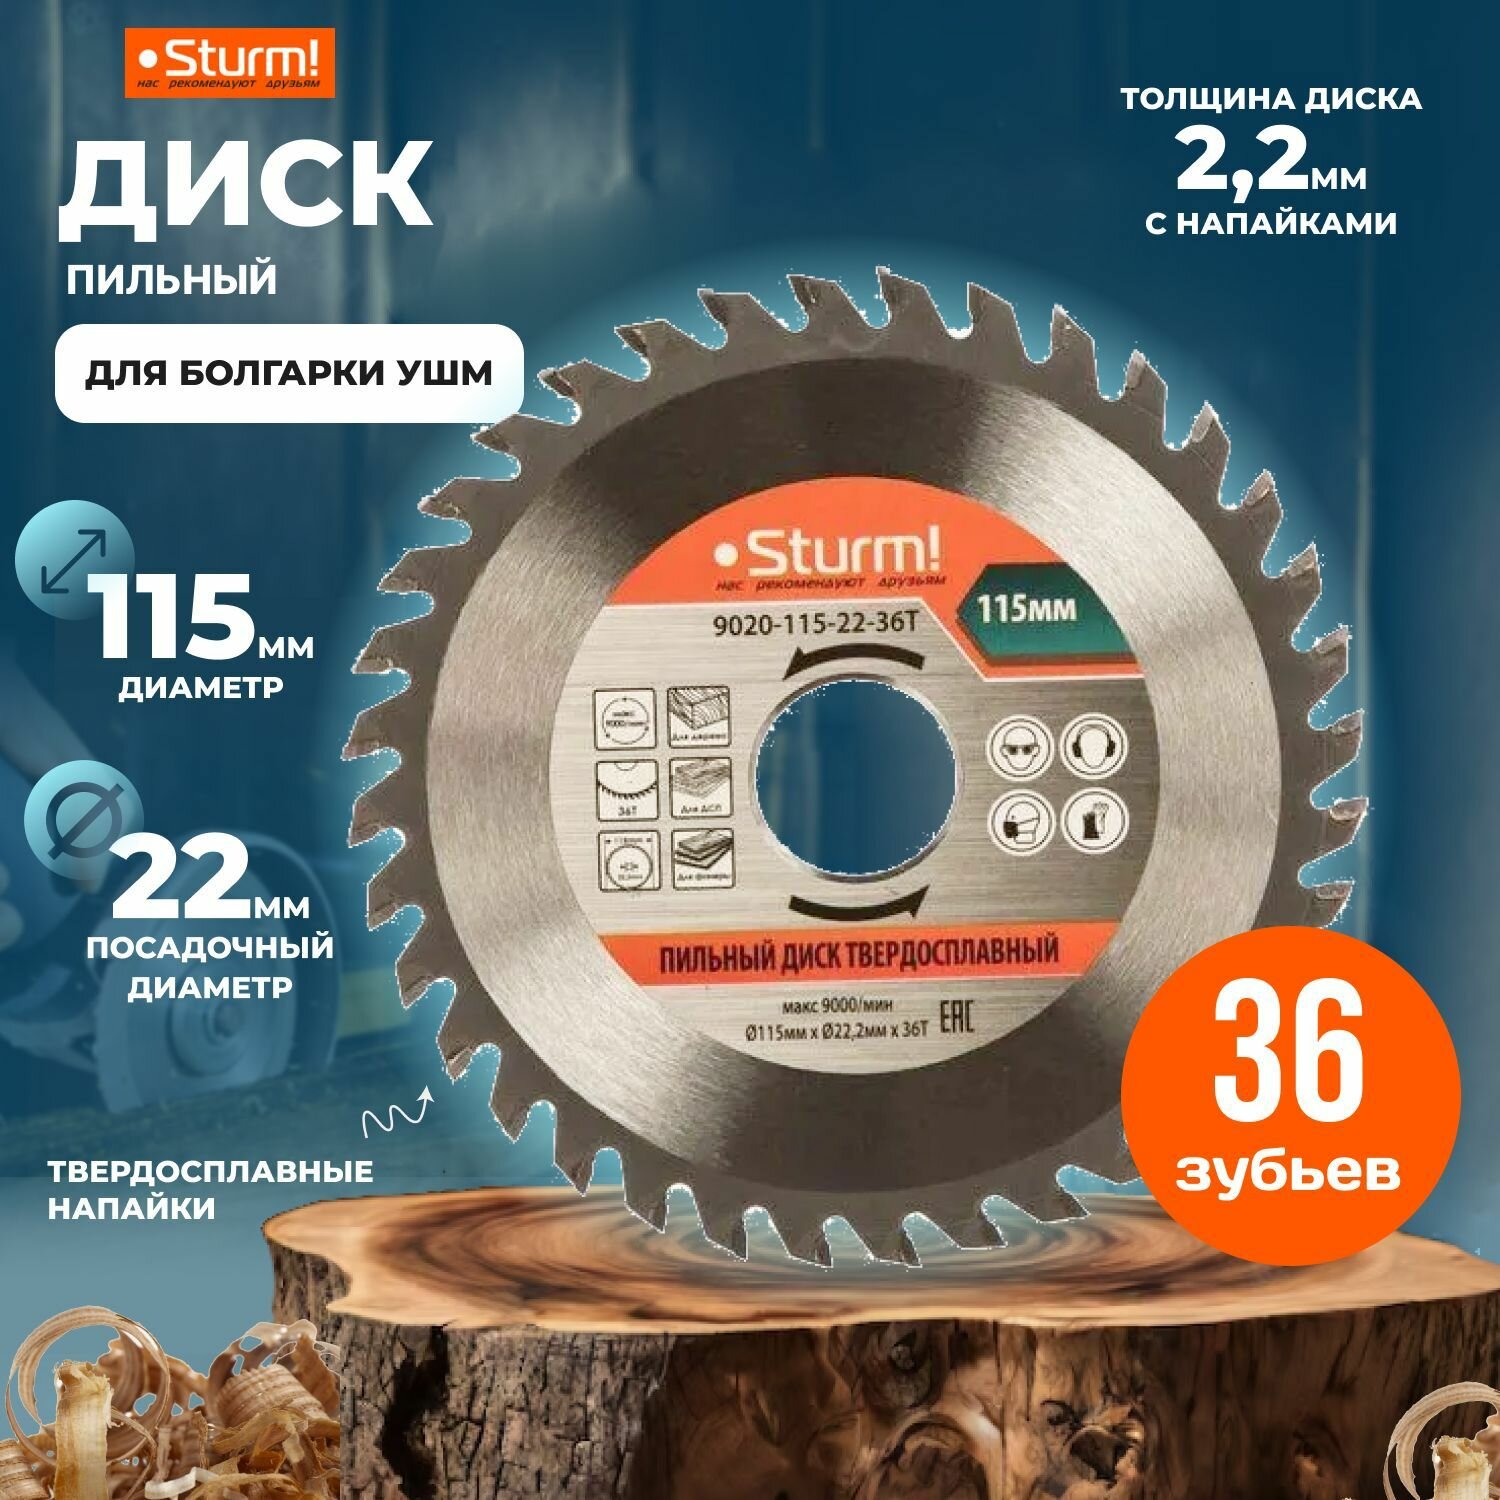 Пильный диск для болгарки УШМ 115x22x36 зубьев, твердосплавные напайки Sturm!